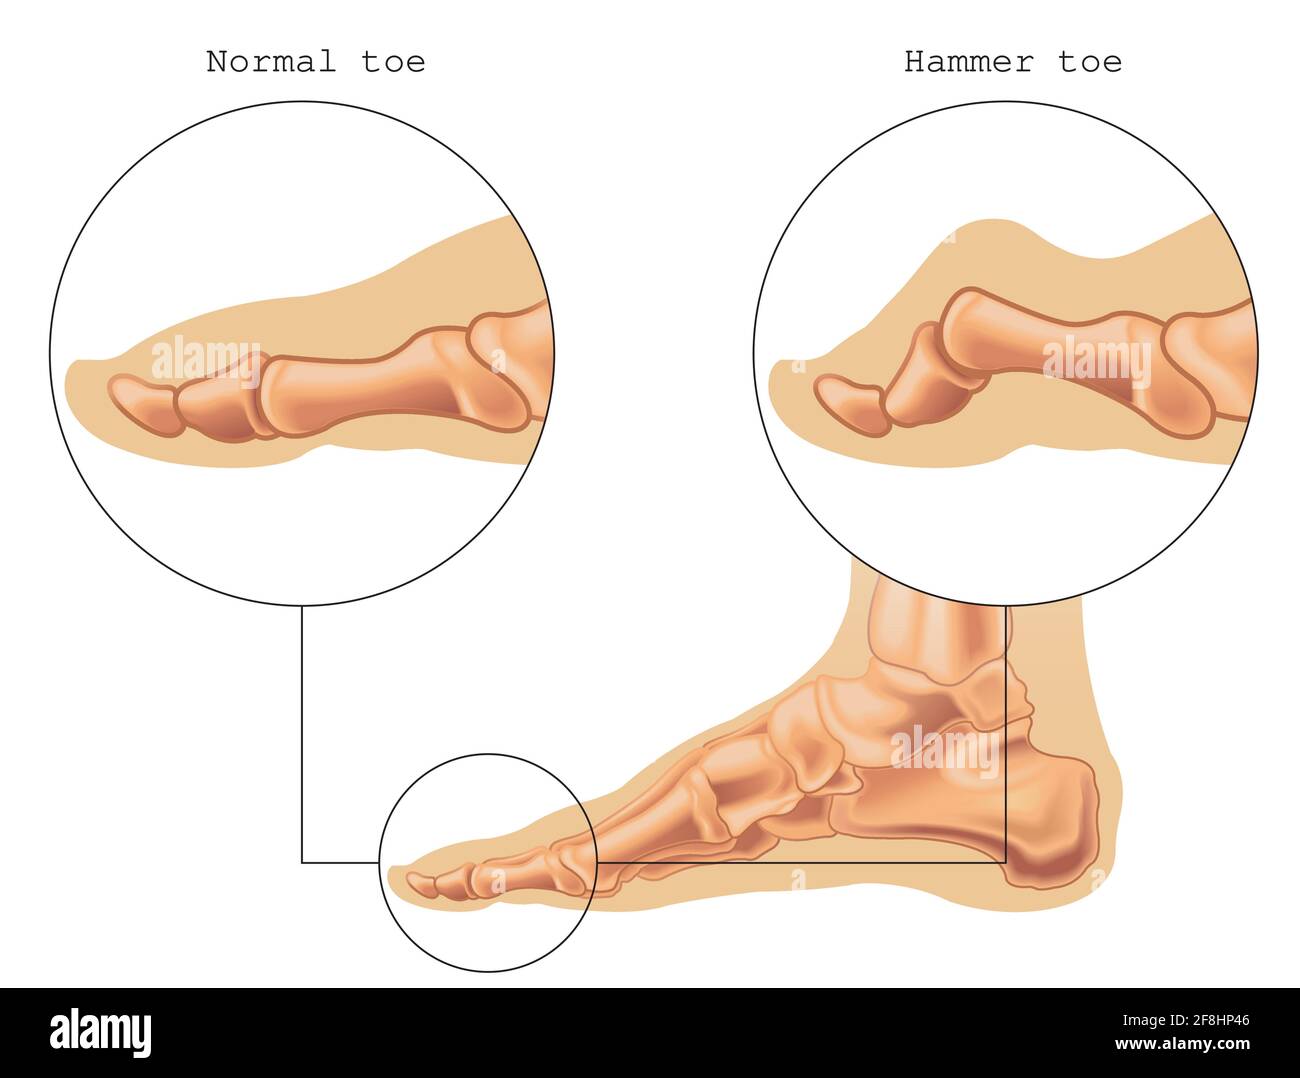 L'illustration médicale montre la différence entre un orteil normal et un orteil marteau, avec des annotations. Illustration de Vecteur